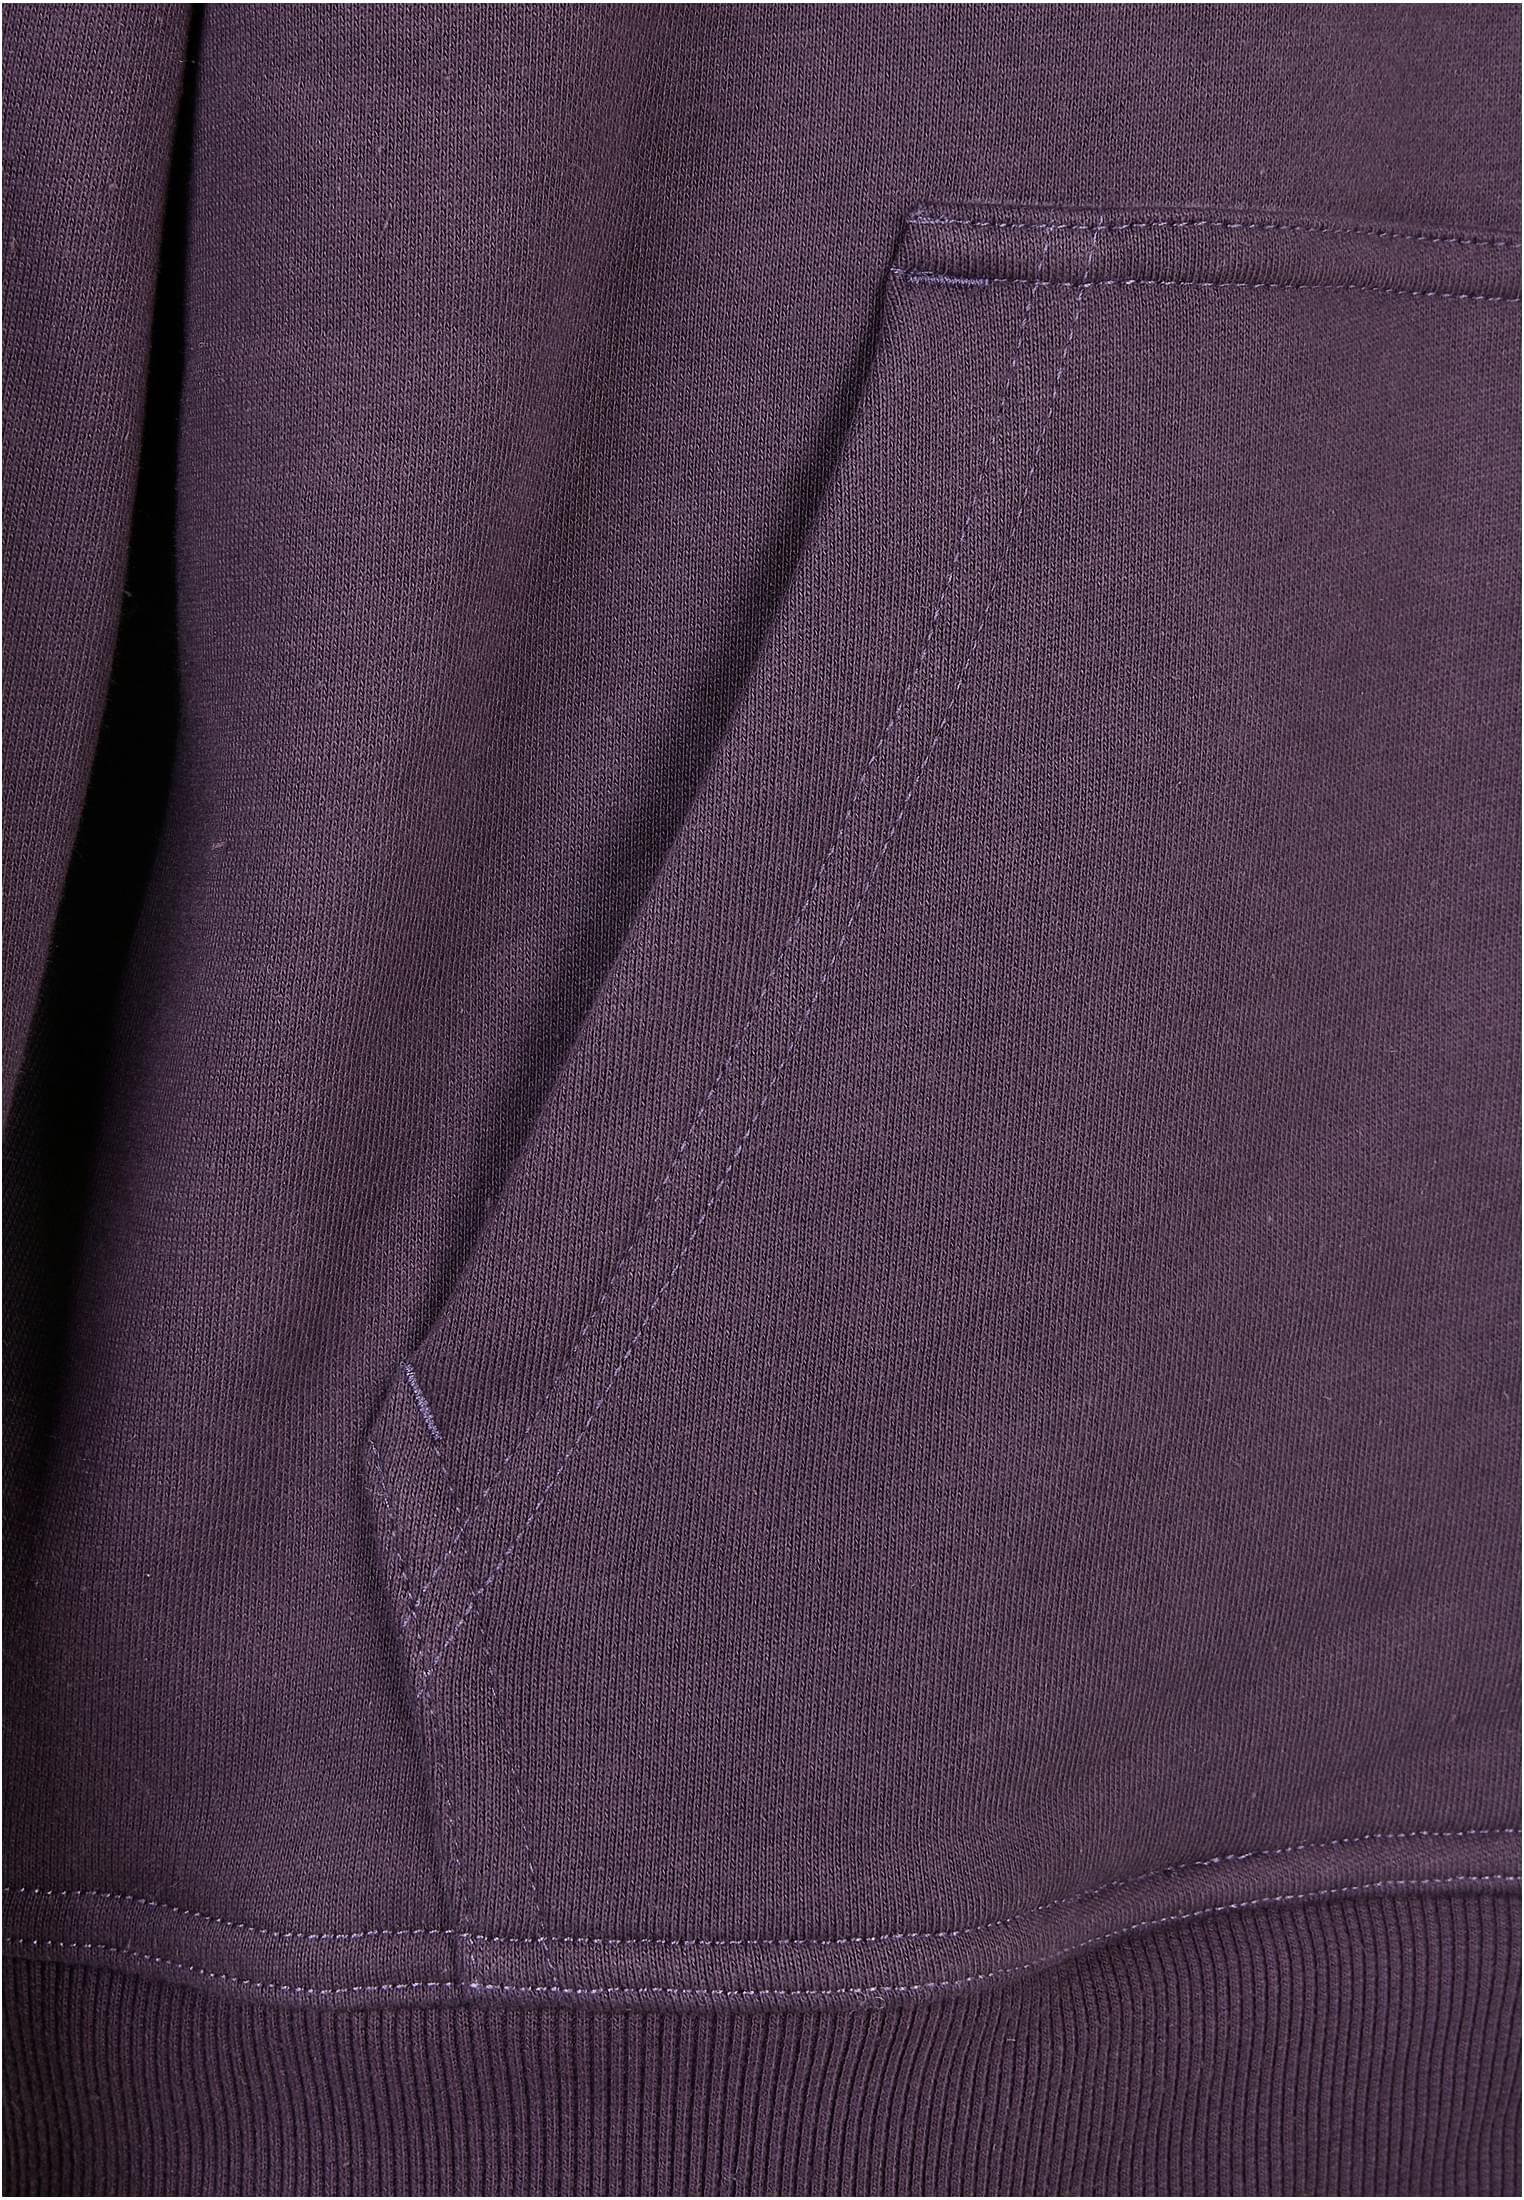 Plus Size Blank Hoody in Farbe purplenight